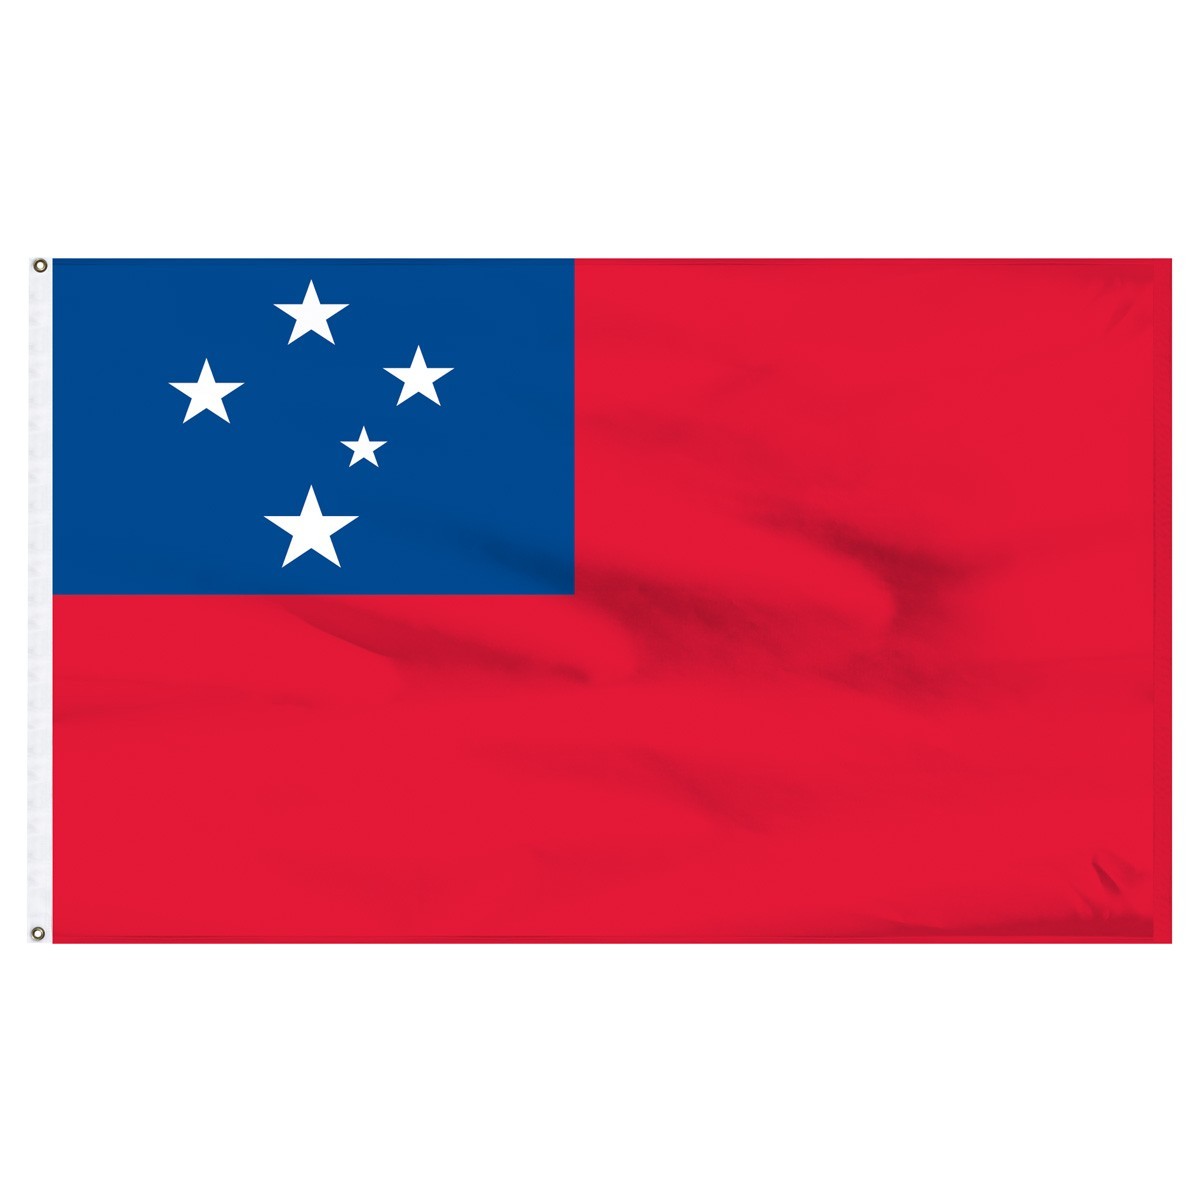 Bandera de nailon para exteriores de Samoa Occidental, 3 pies x 5 pies